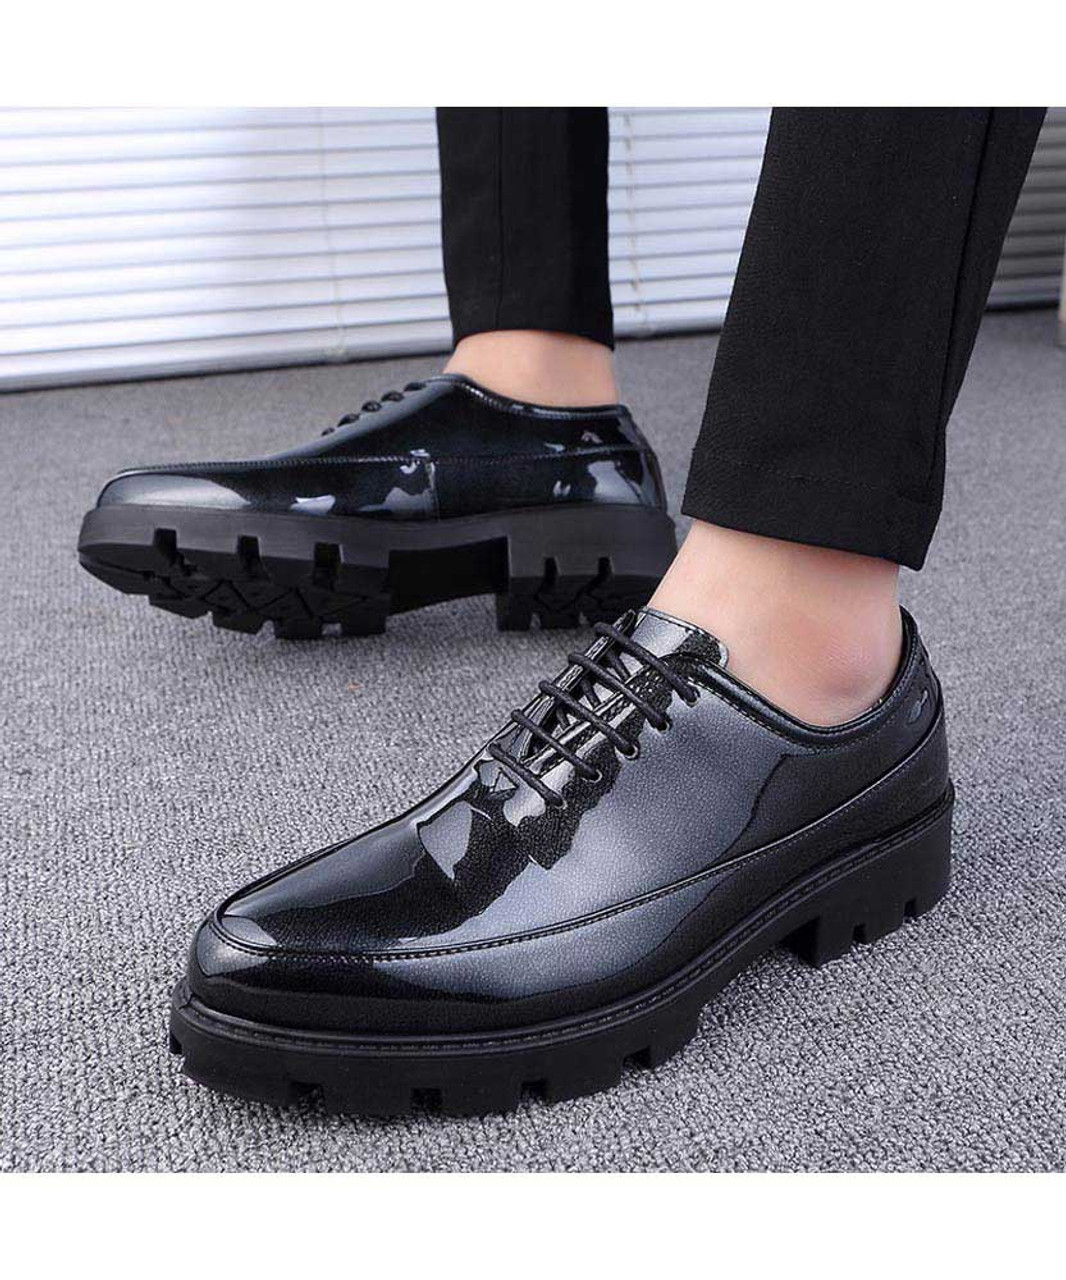 Black plain patent leather oxford dress shoe | Mens dress shoes online ...